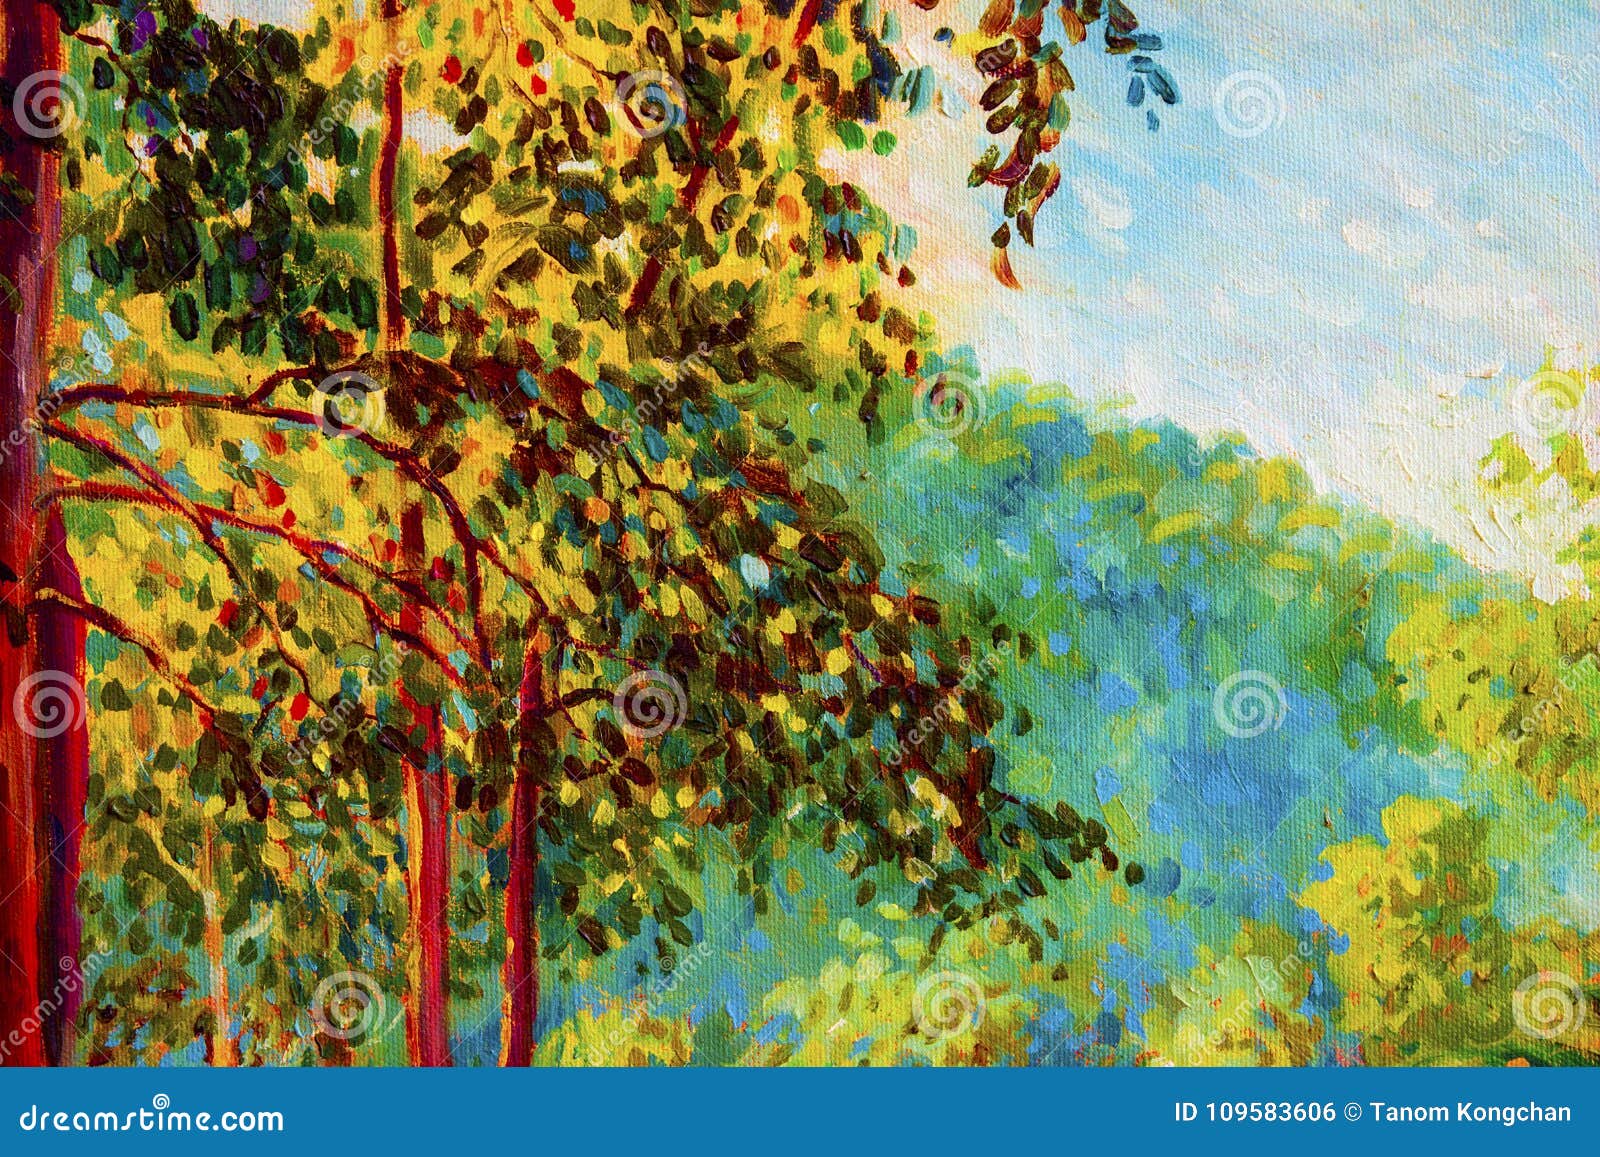 Ölgemäldelandschaft auf Segeltuch - bunte Herbstbäume Halb abstraktes Bild des Waldes, Bäume mit gelbem, rotem Blatt Herbstsaisonnaturhintergrund Handgemalte Impressionistart